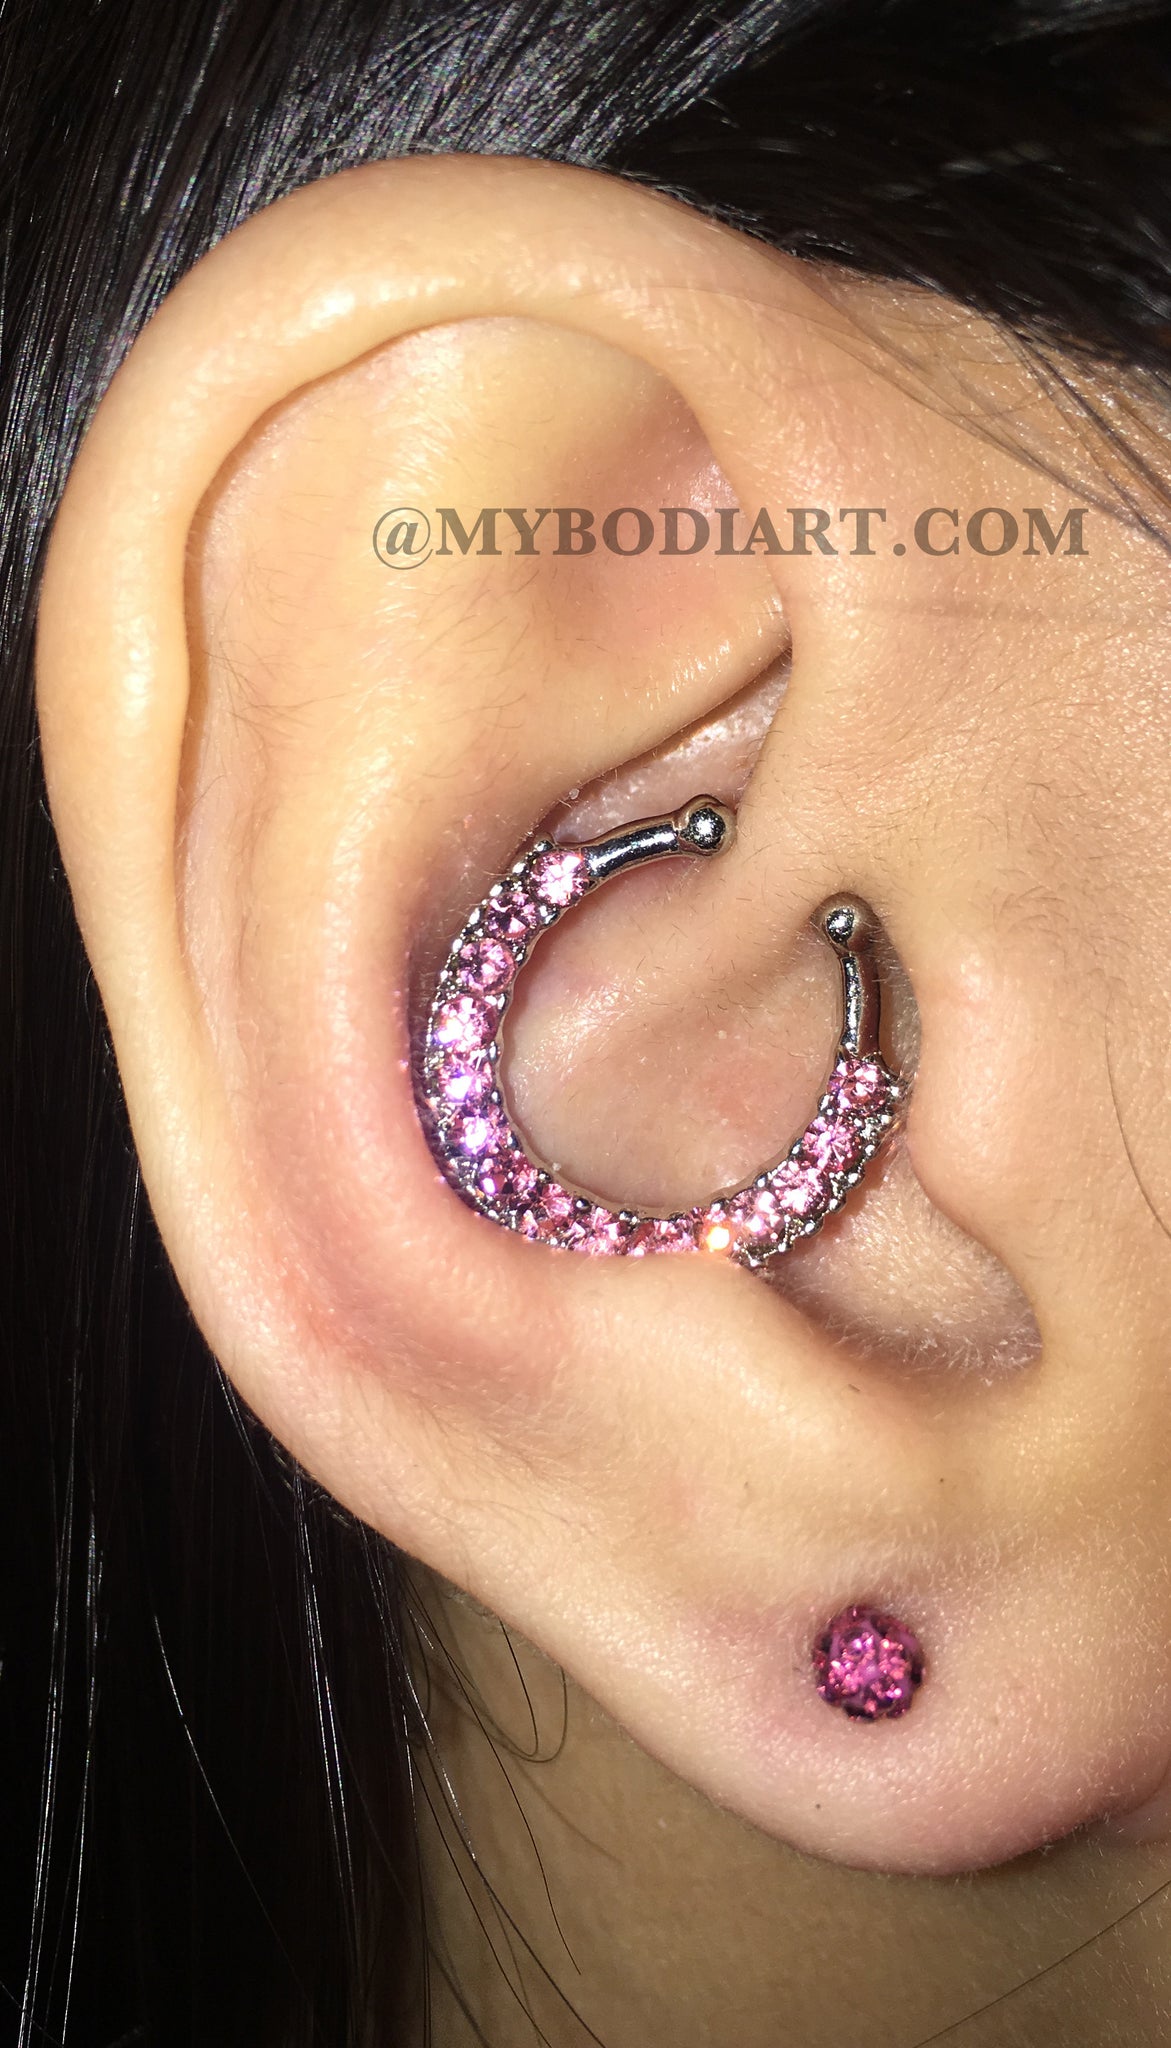 Pretty Ear Piercing Ideas Cartilage Earring Helix Ring Daith Hoop Rook Pink Ferido Lobe Stud - www.MyBodiArt.com 